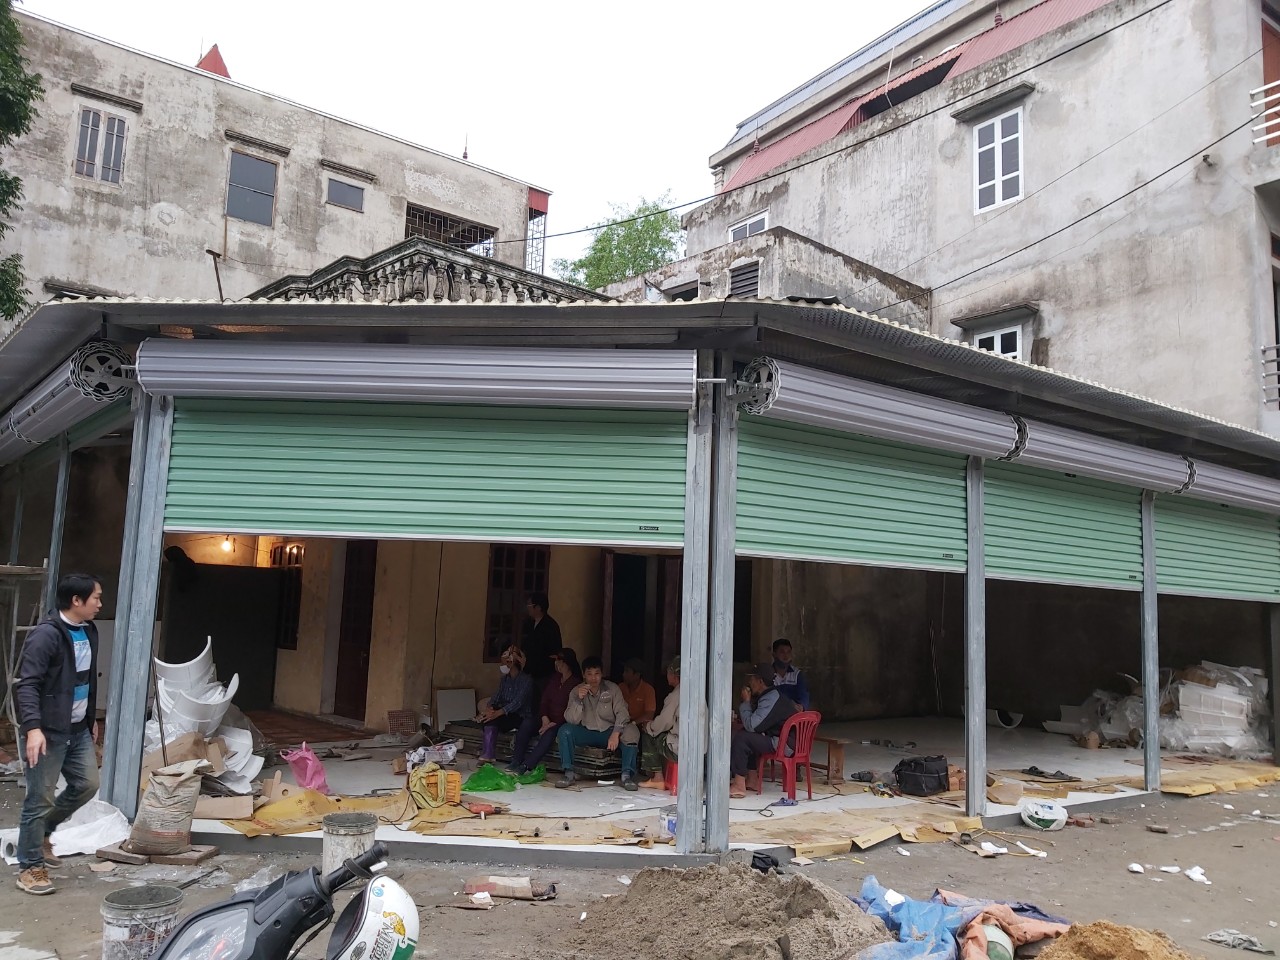 Cách bảo dưỡng cửa cuốn tại Hà Nội, chi phí rẻ, chủ động cho khách hàng